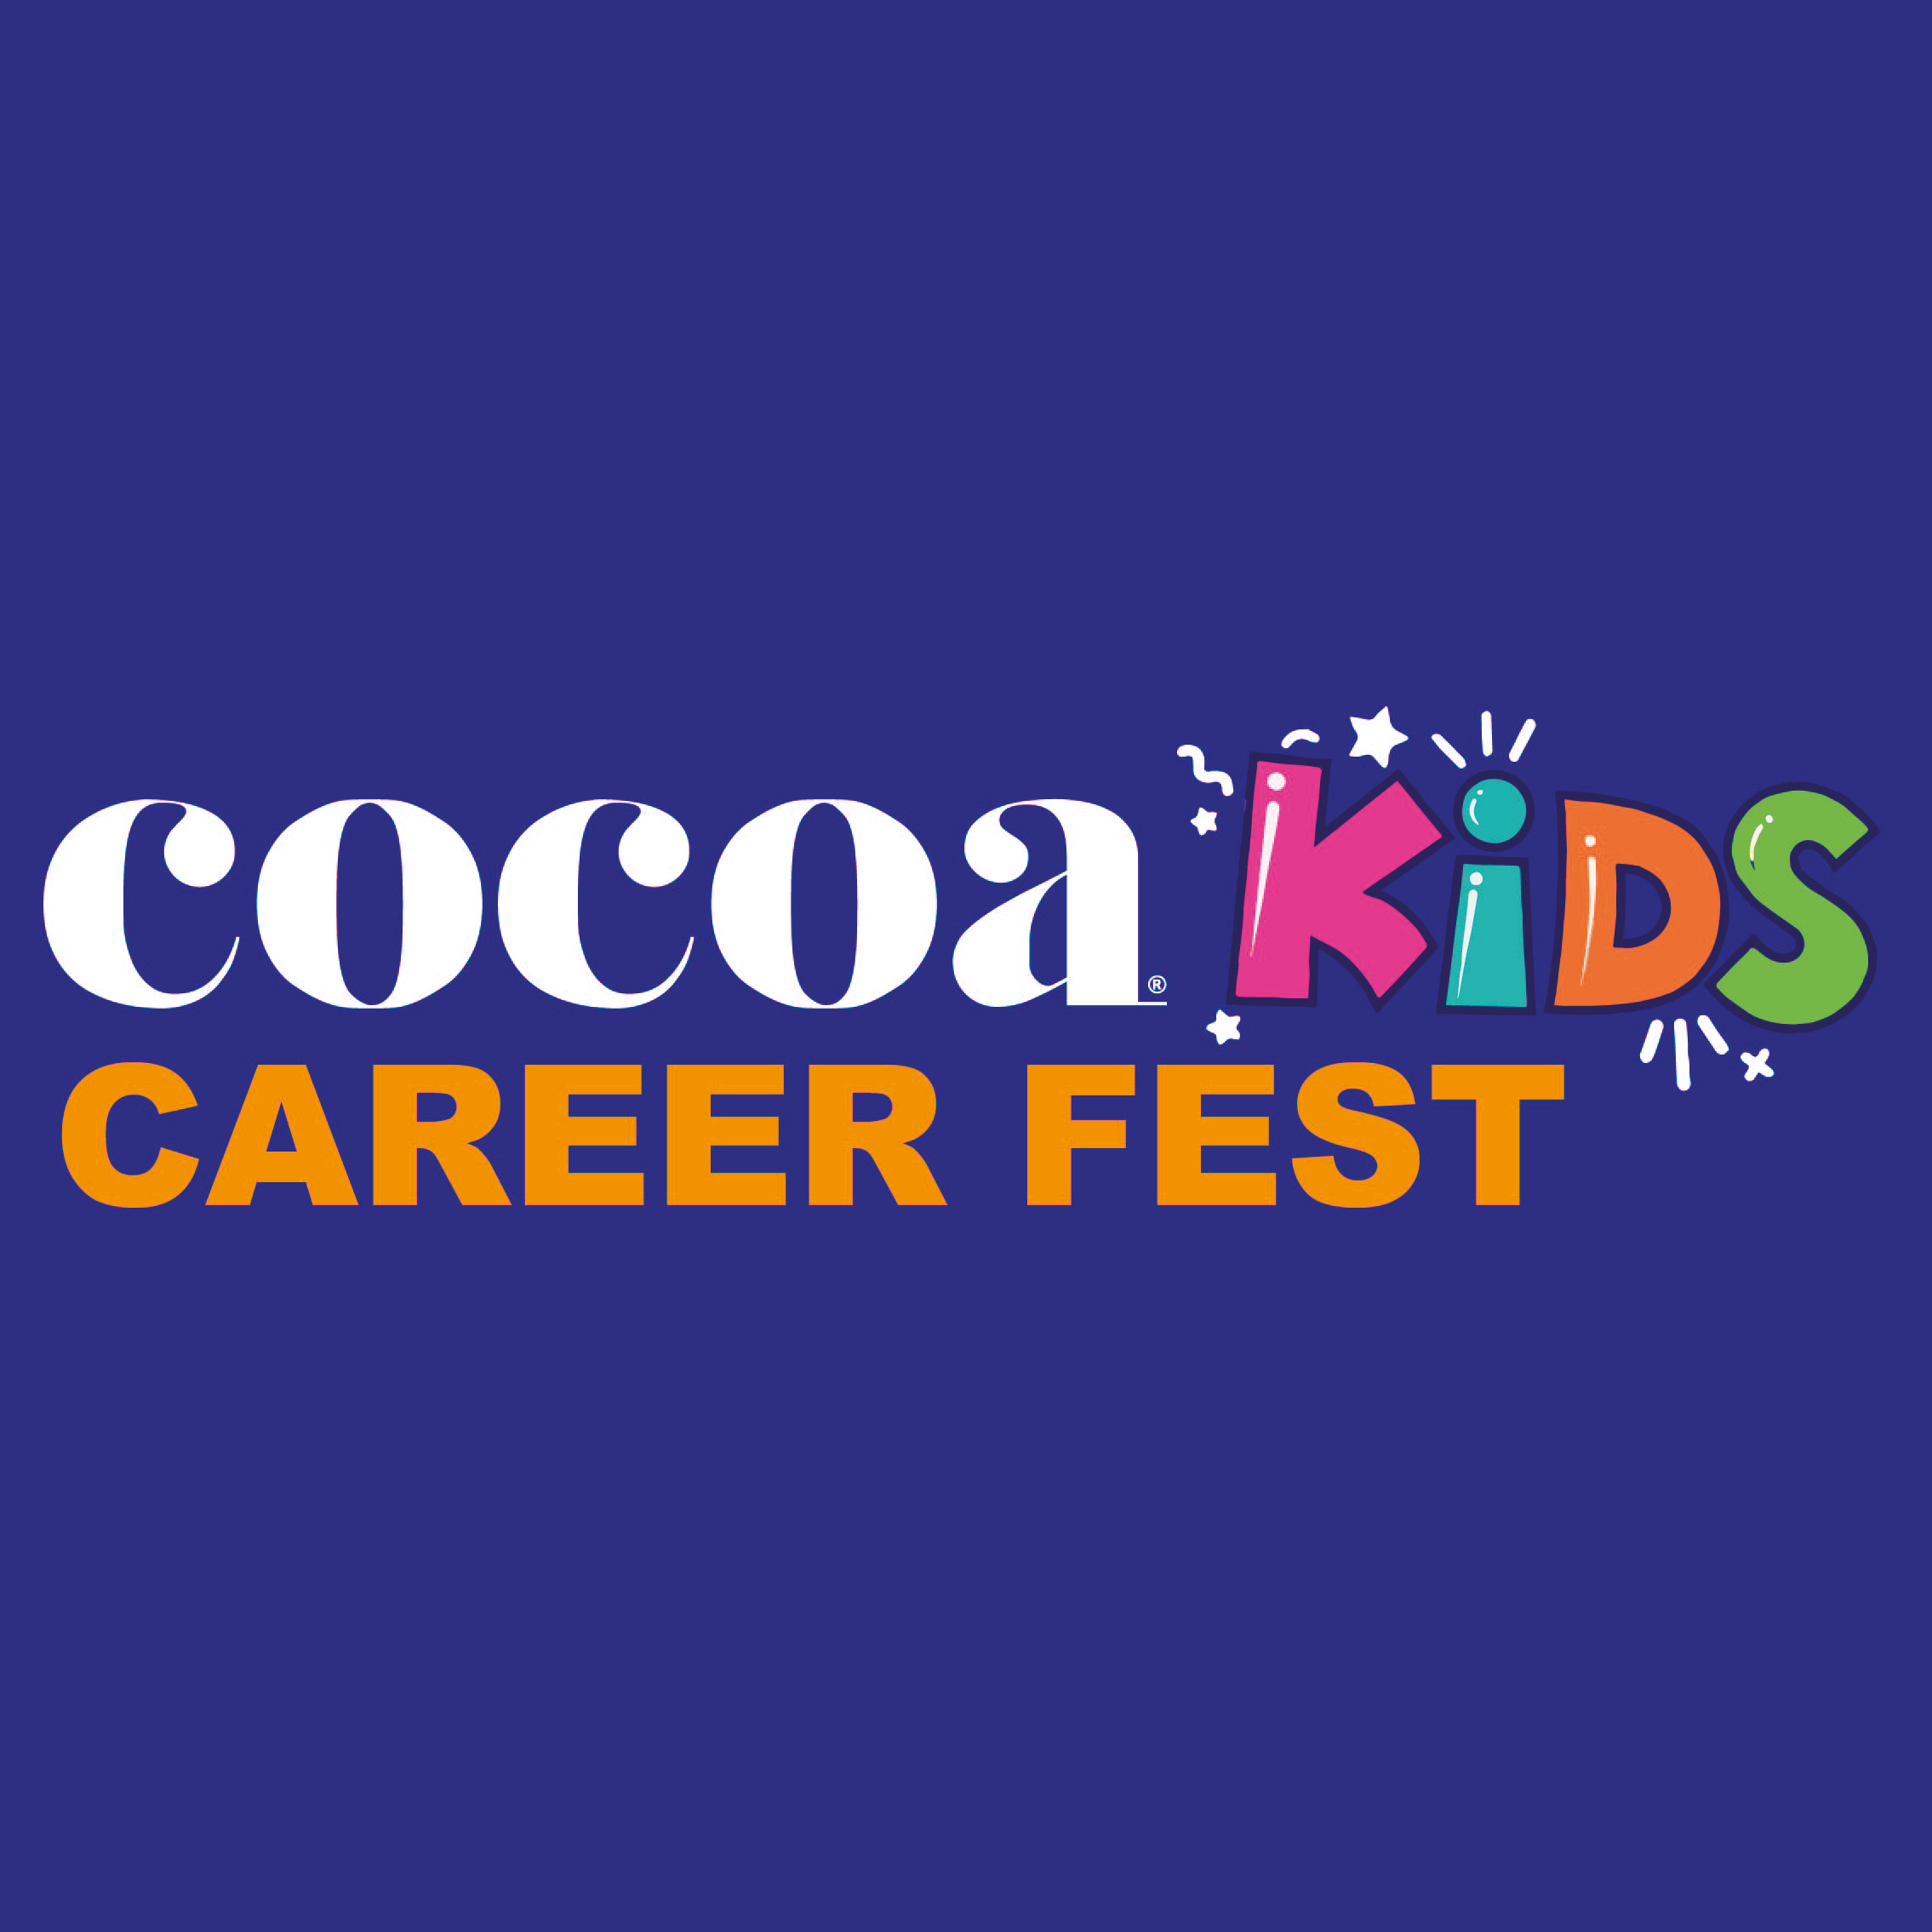 Cocoa Kids Career Fest